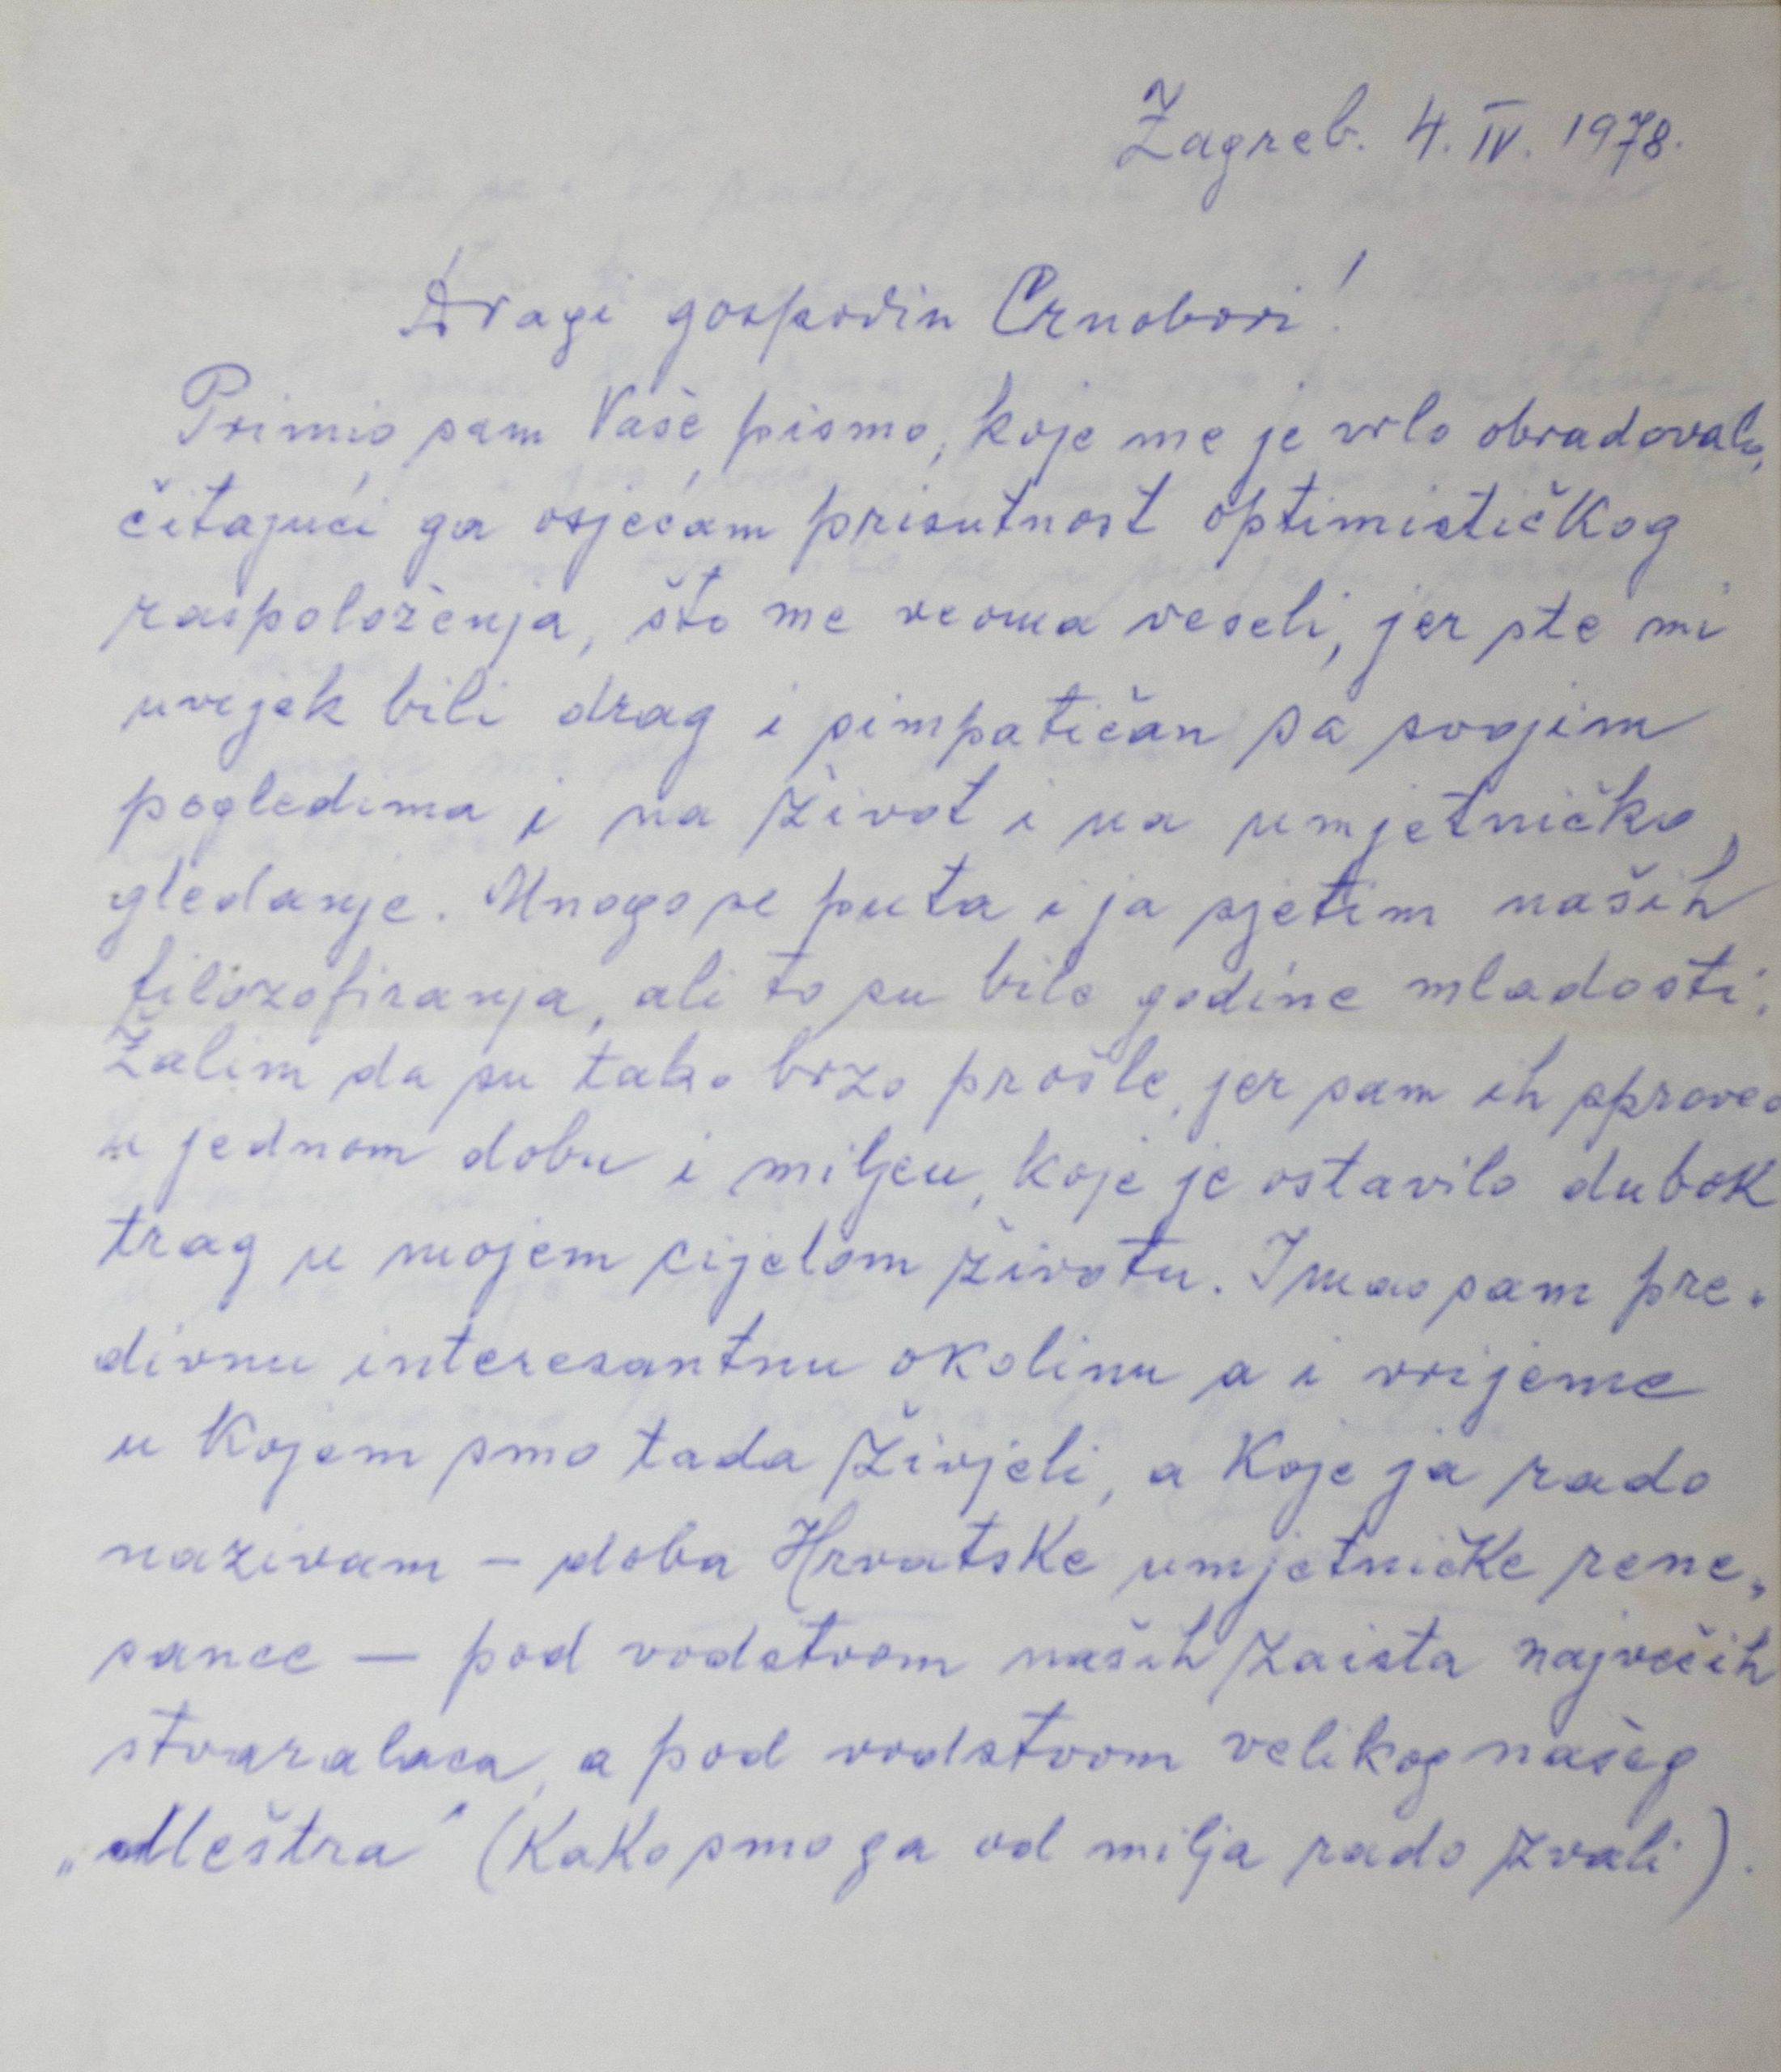 Pismo Zvonimira Pučara Josipu Crnoboriju, 4. 4. 1978.